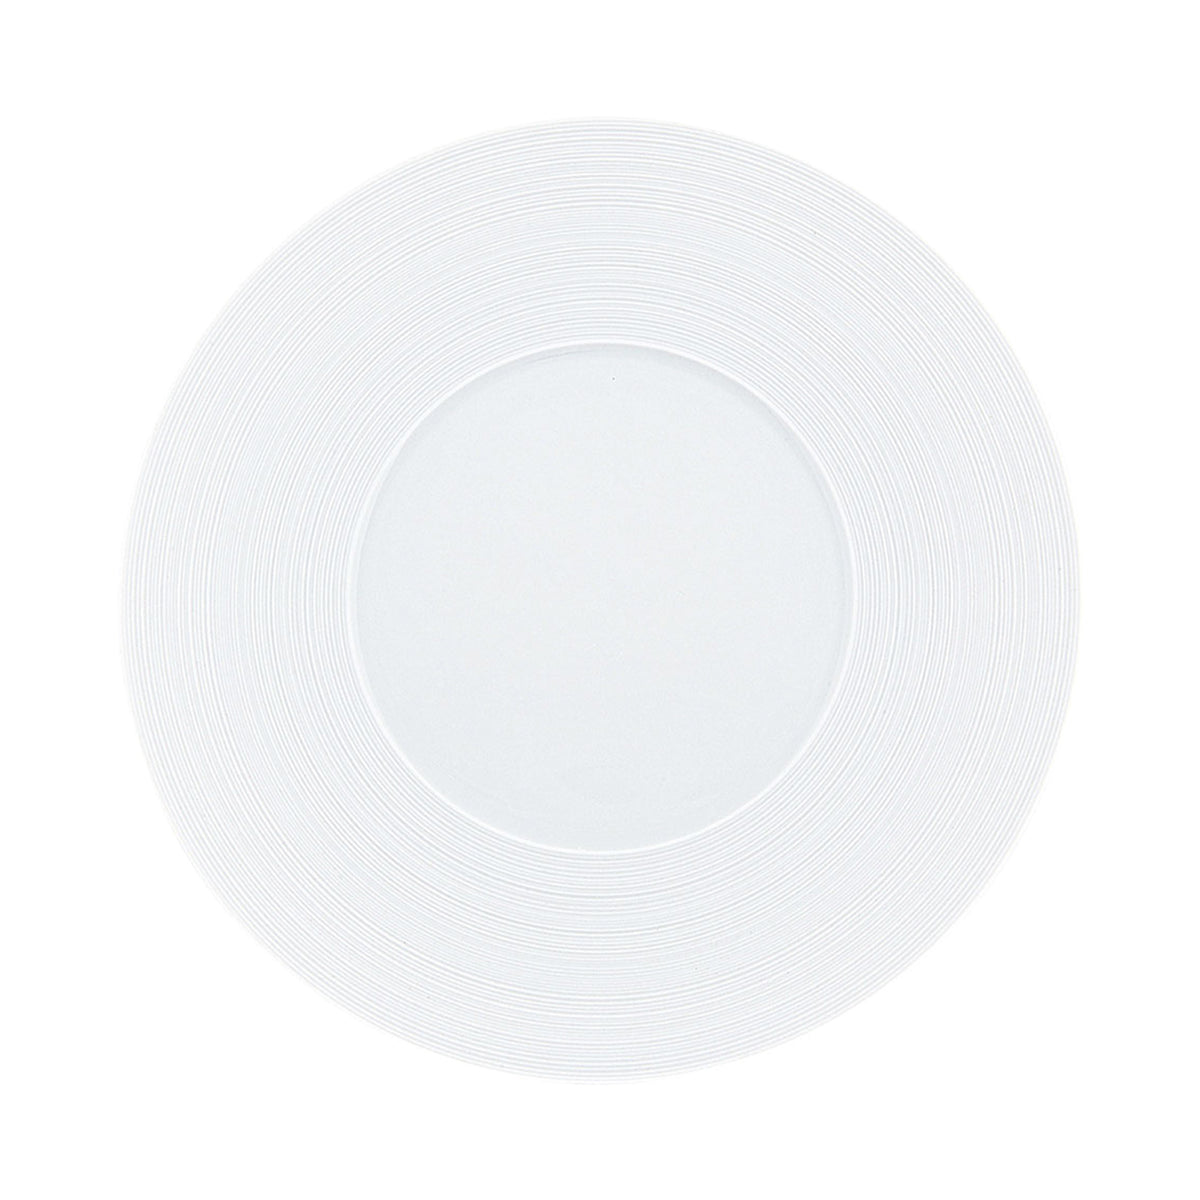 HEMISPHERE Blanc Satiné - Assiette 29 cm